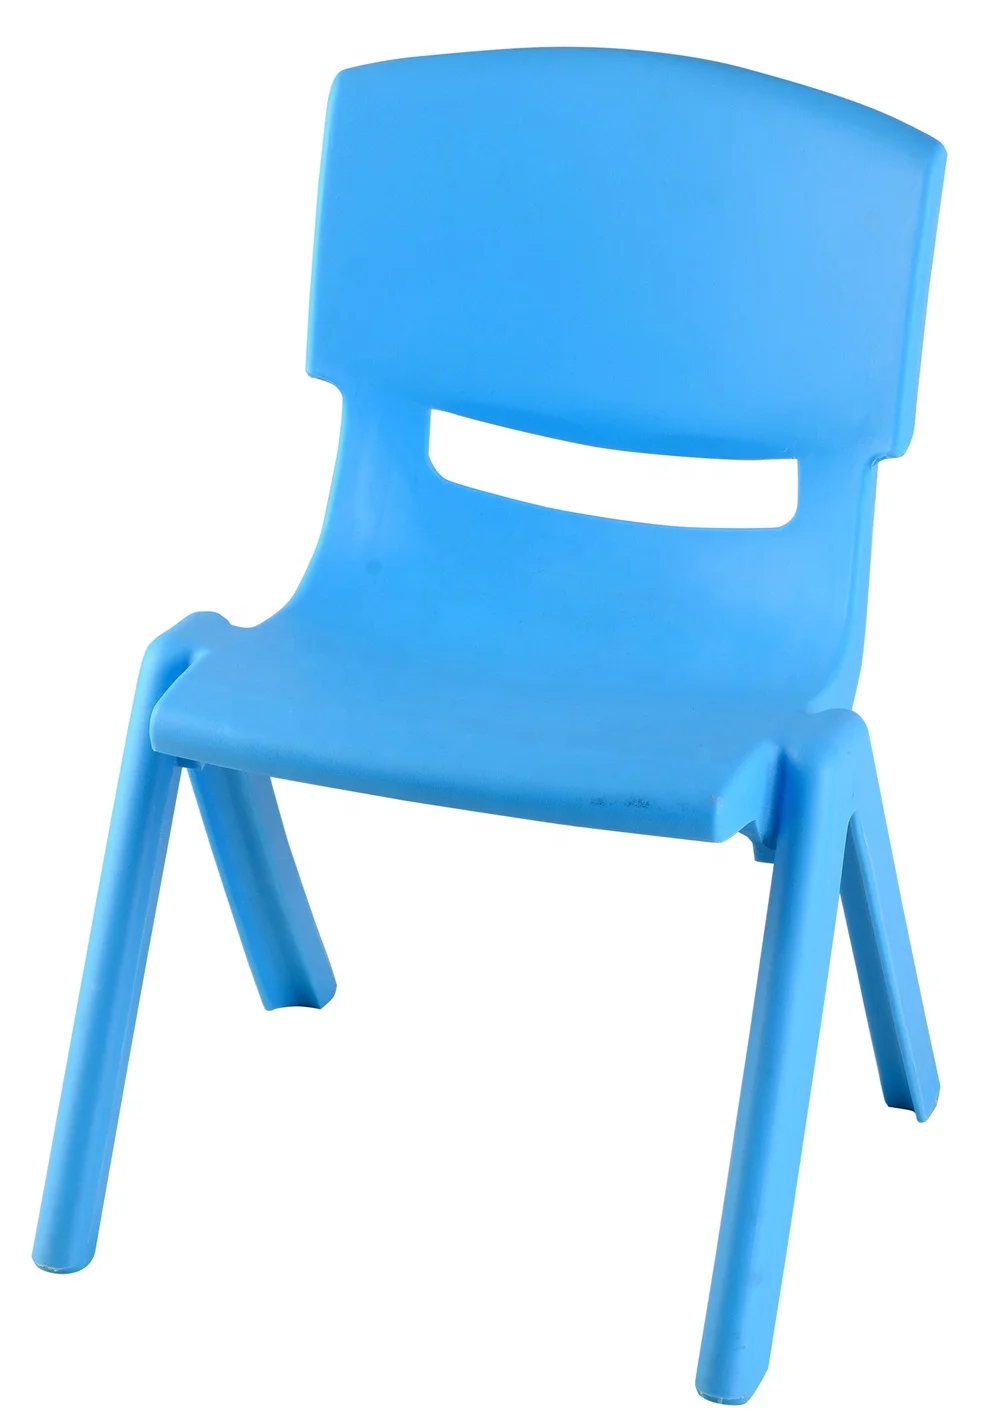 buy 塑料可堆叠学校,塑料儿童椅子,椅子 product on